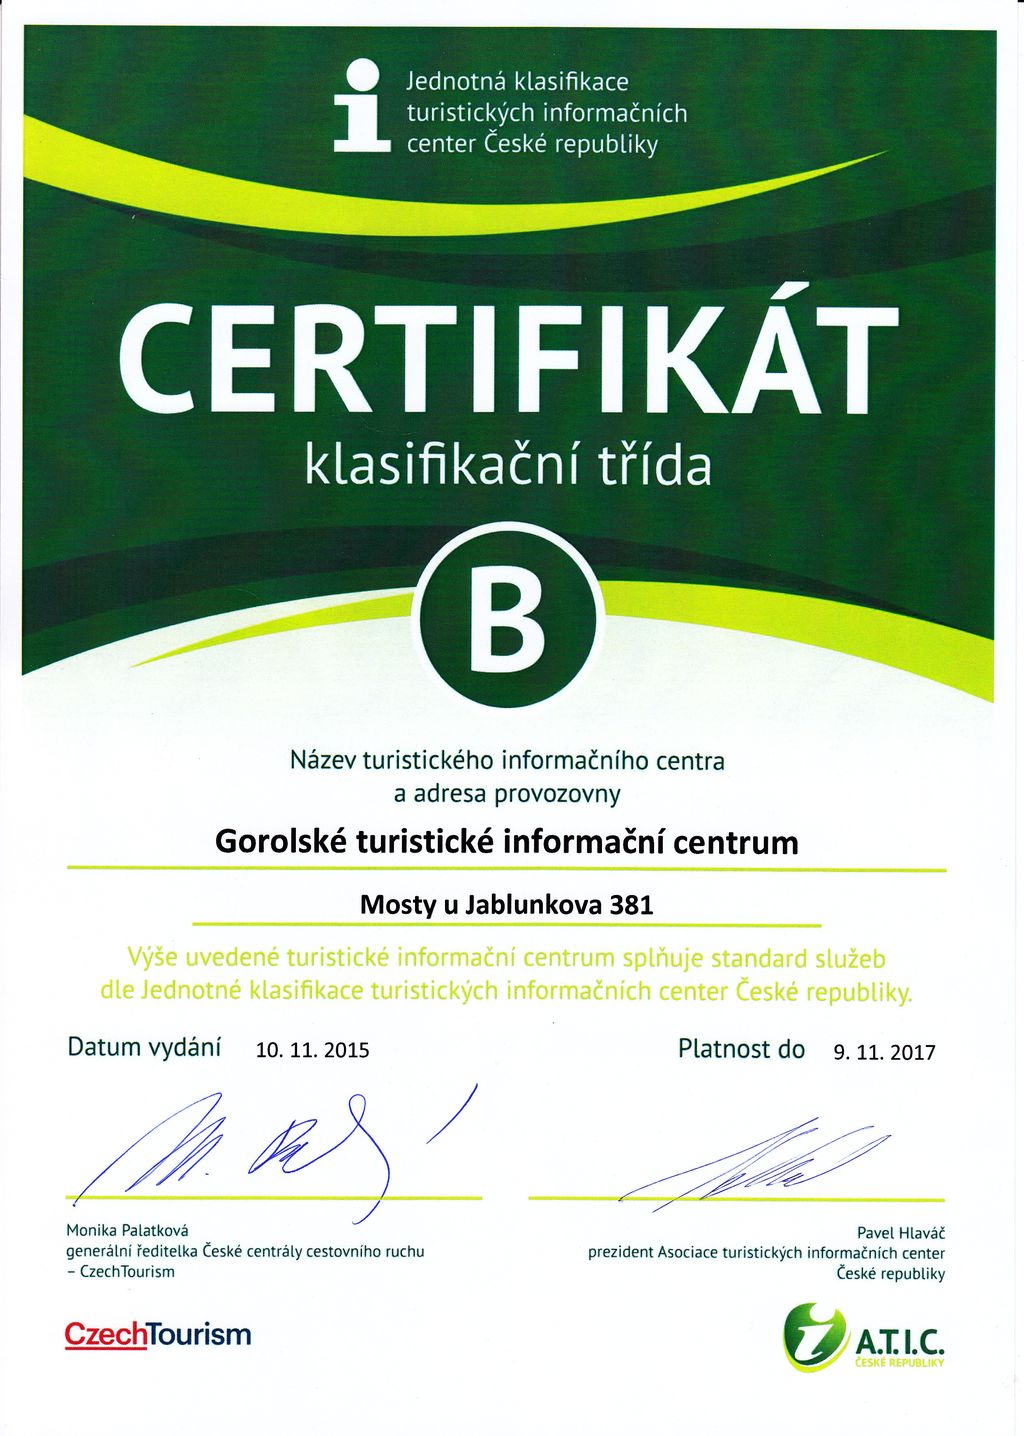 Certifikat 2015-17 m